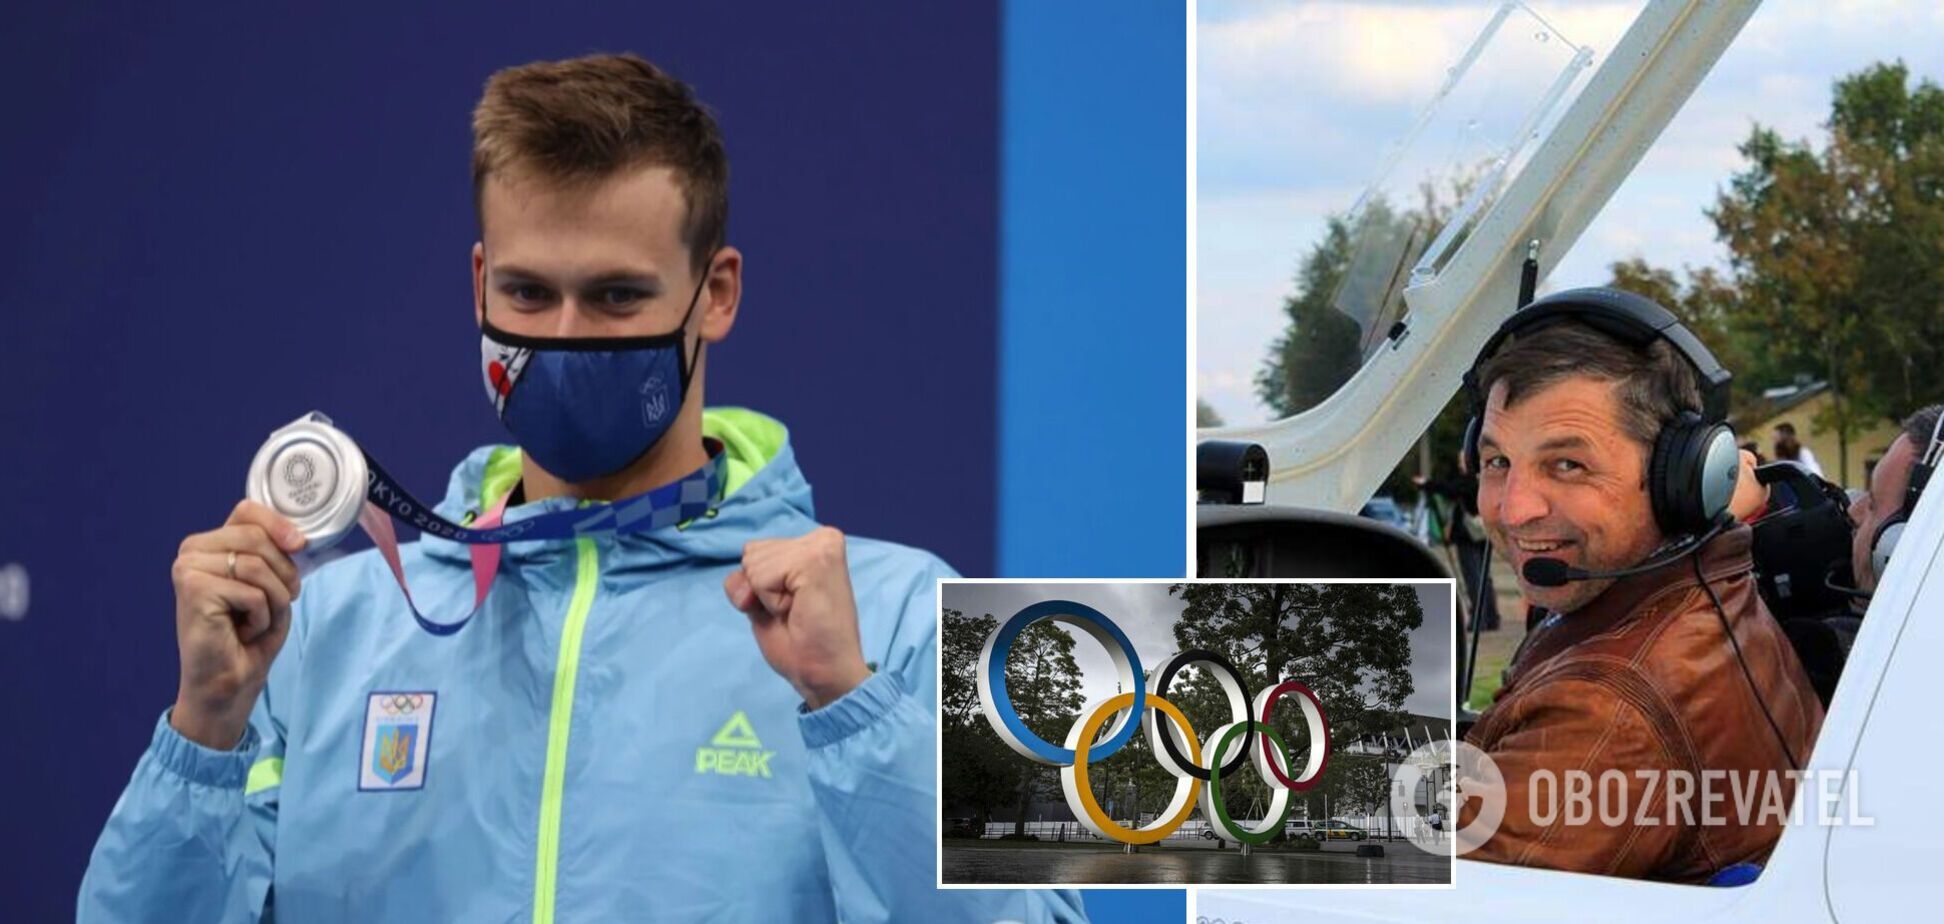 Новини України: Романчук завоював 'срібло' на Олімпіаді, а родичі Табанюка назвали авіакатастрофу вбивством